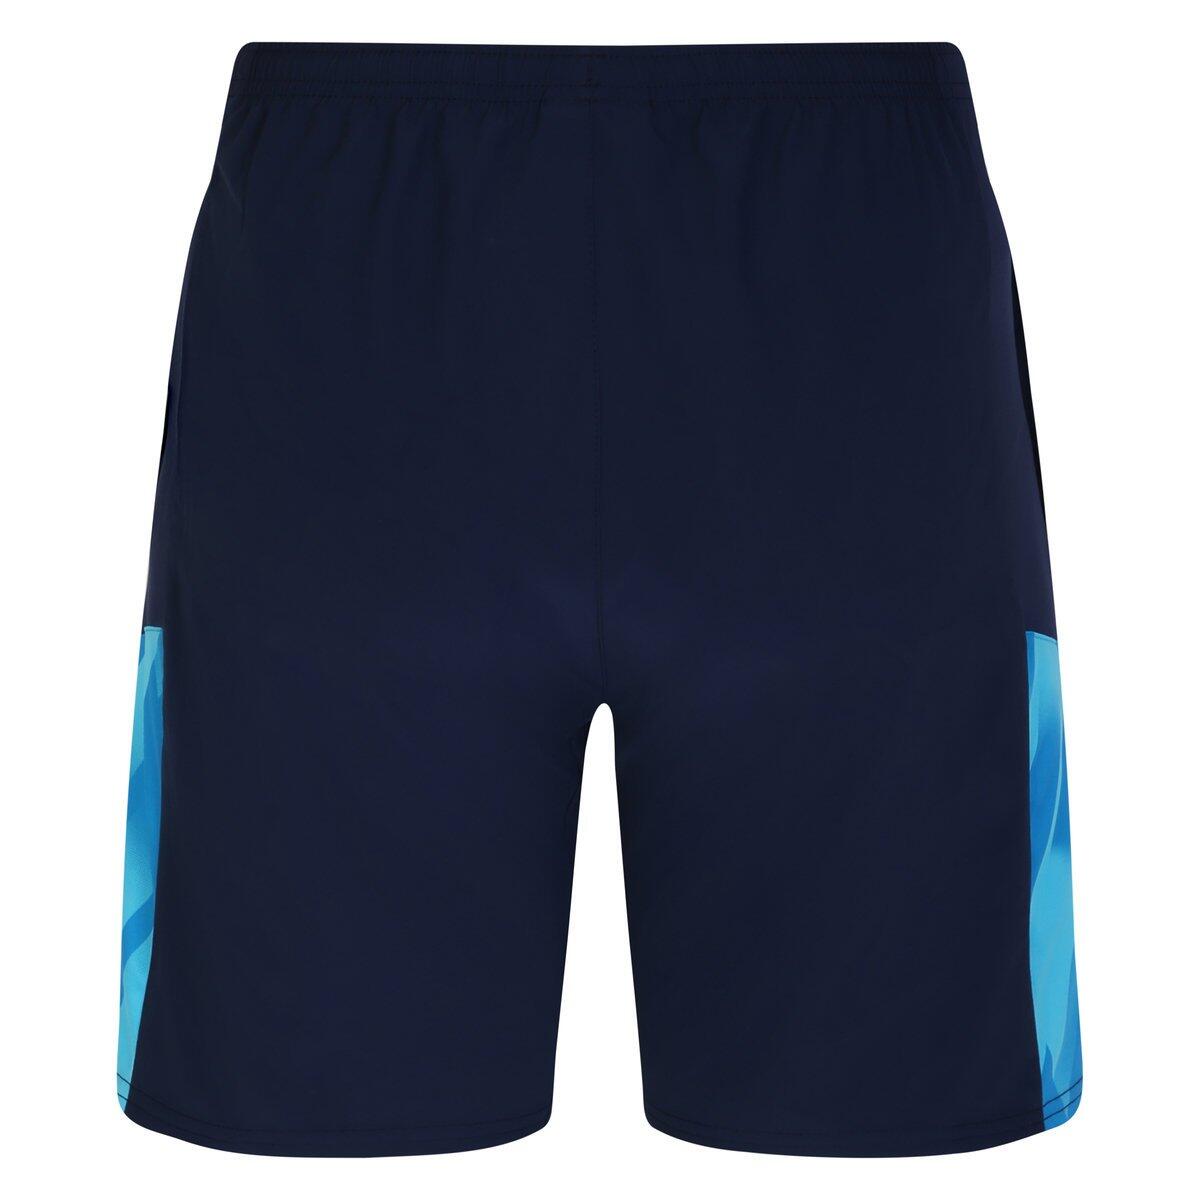 Mens ´23 Woven Williams Racing Shorts (Peacoat/Diva Blue) 2/4